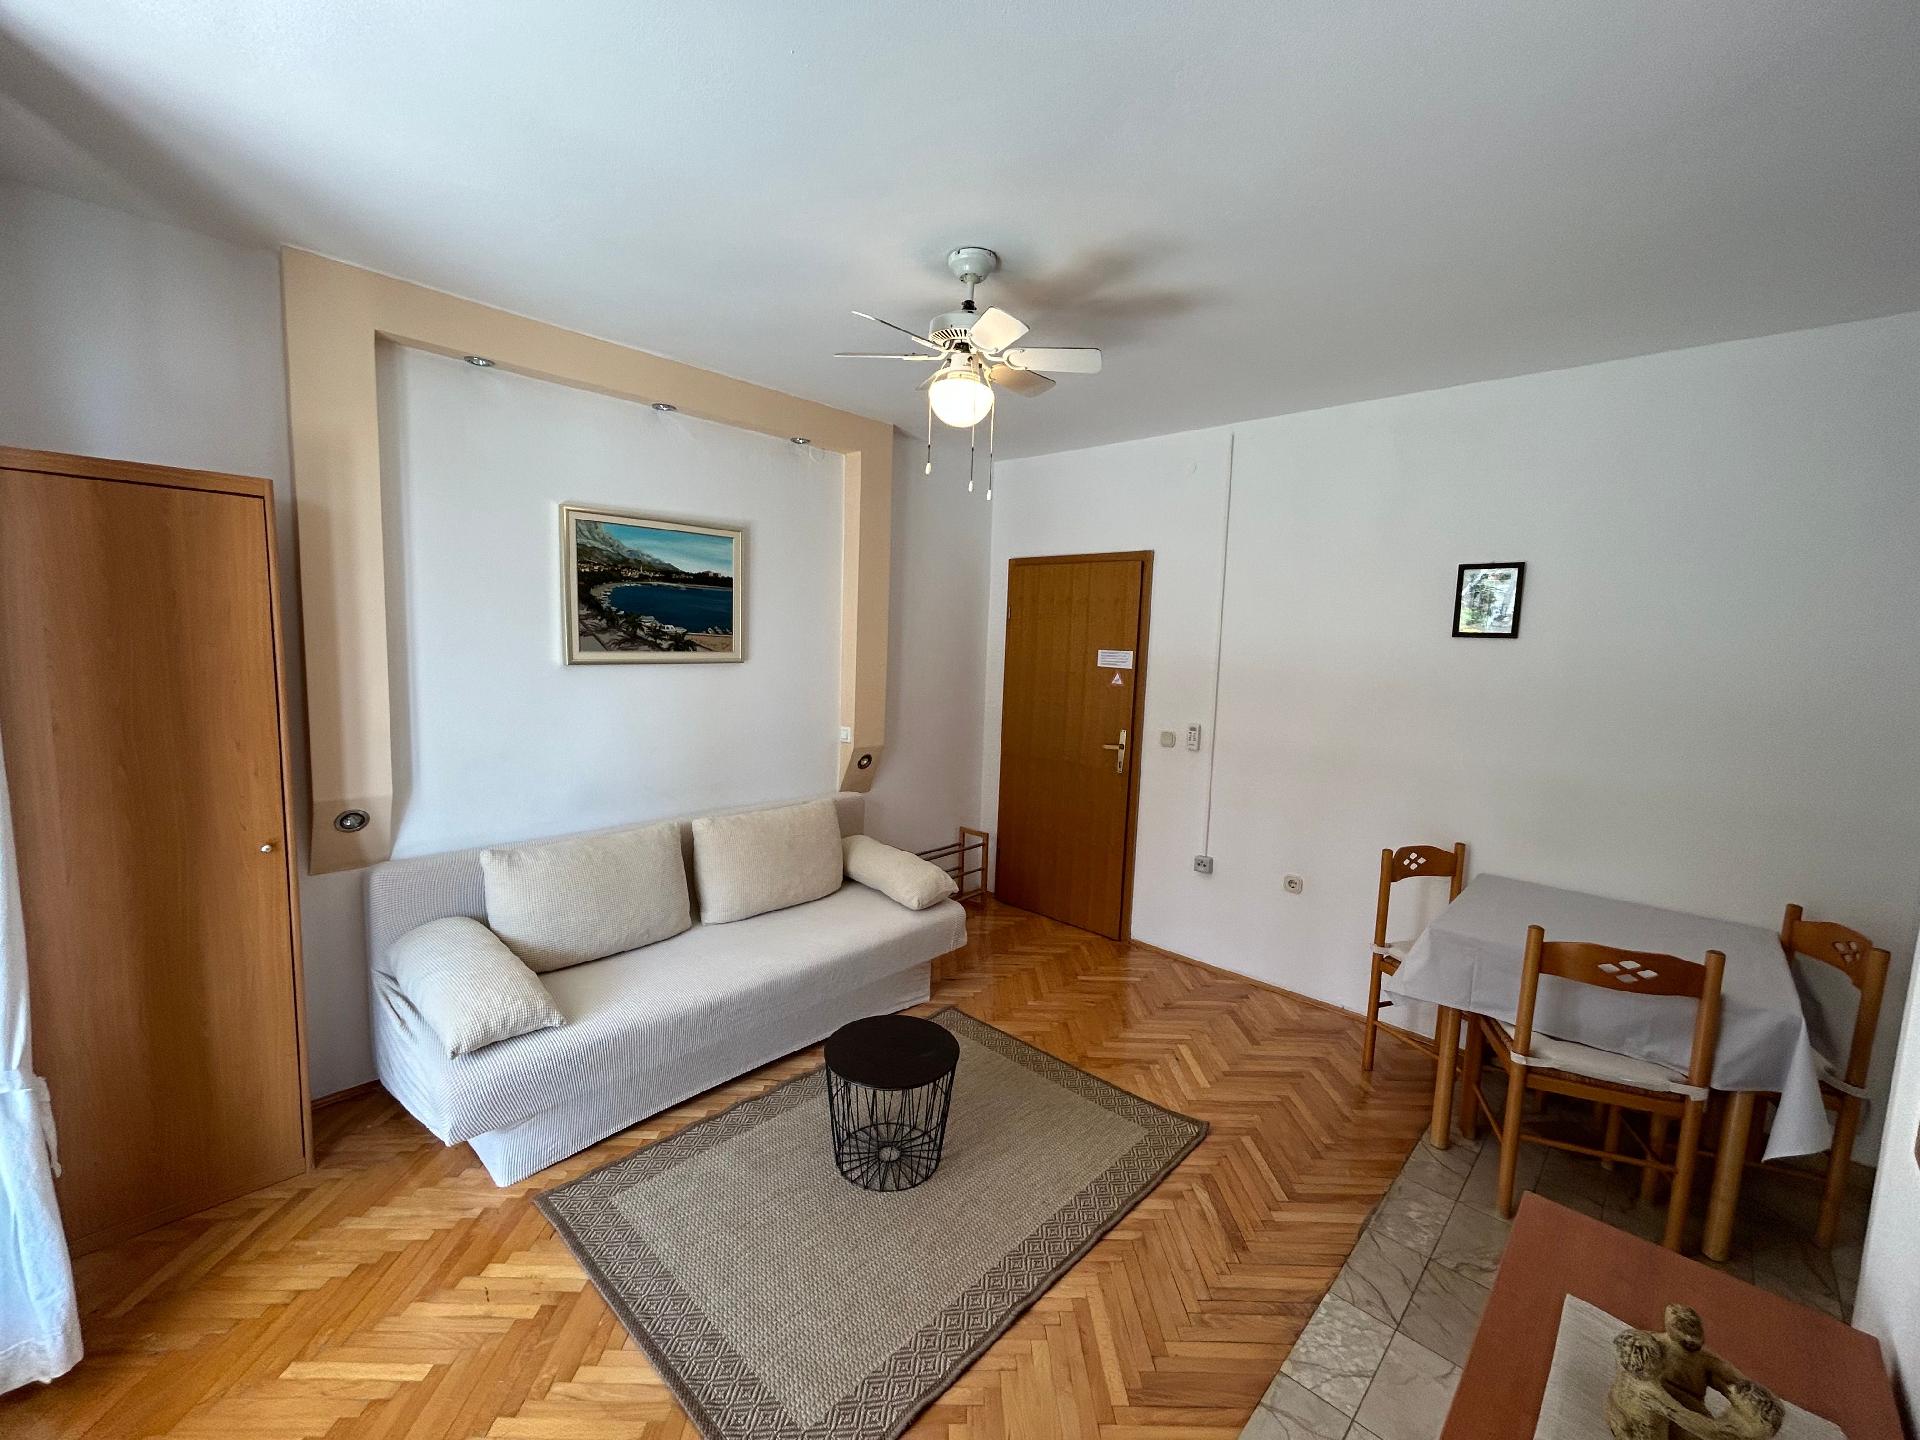 Ferienwohnung für 4 Personen ca. 43 m² i Ferienwohnung in Kroatien